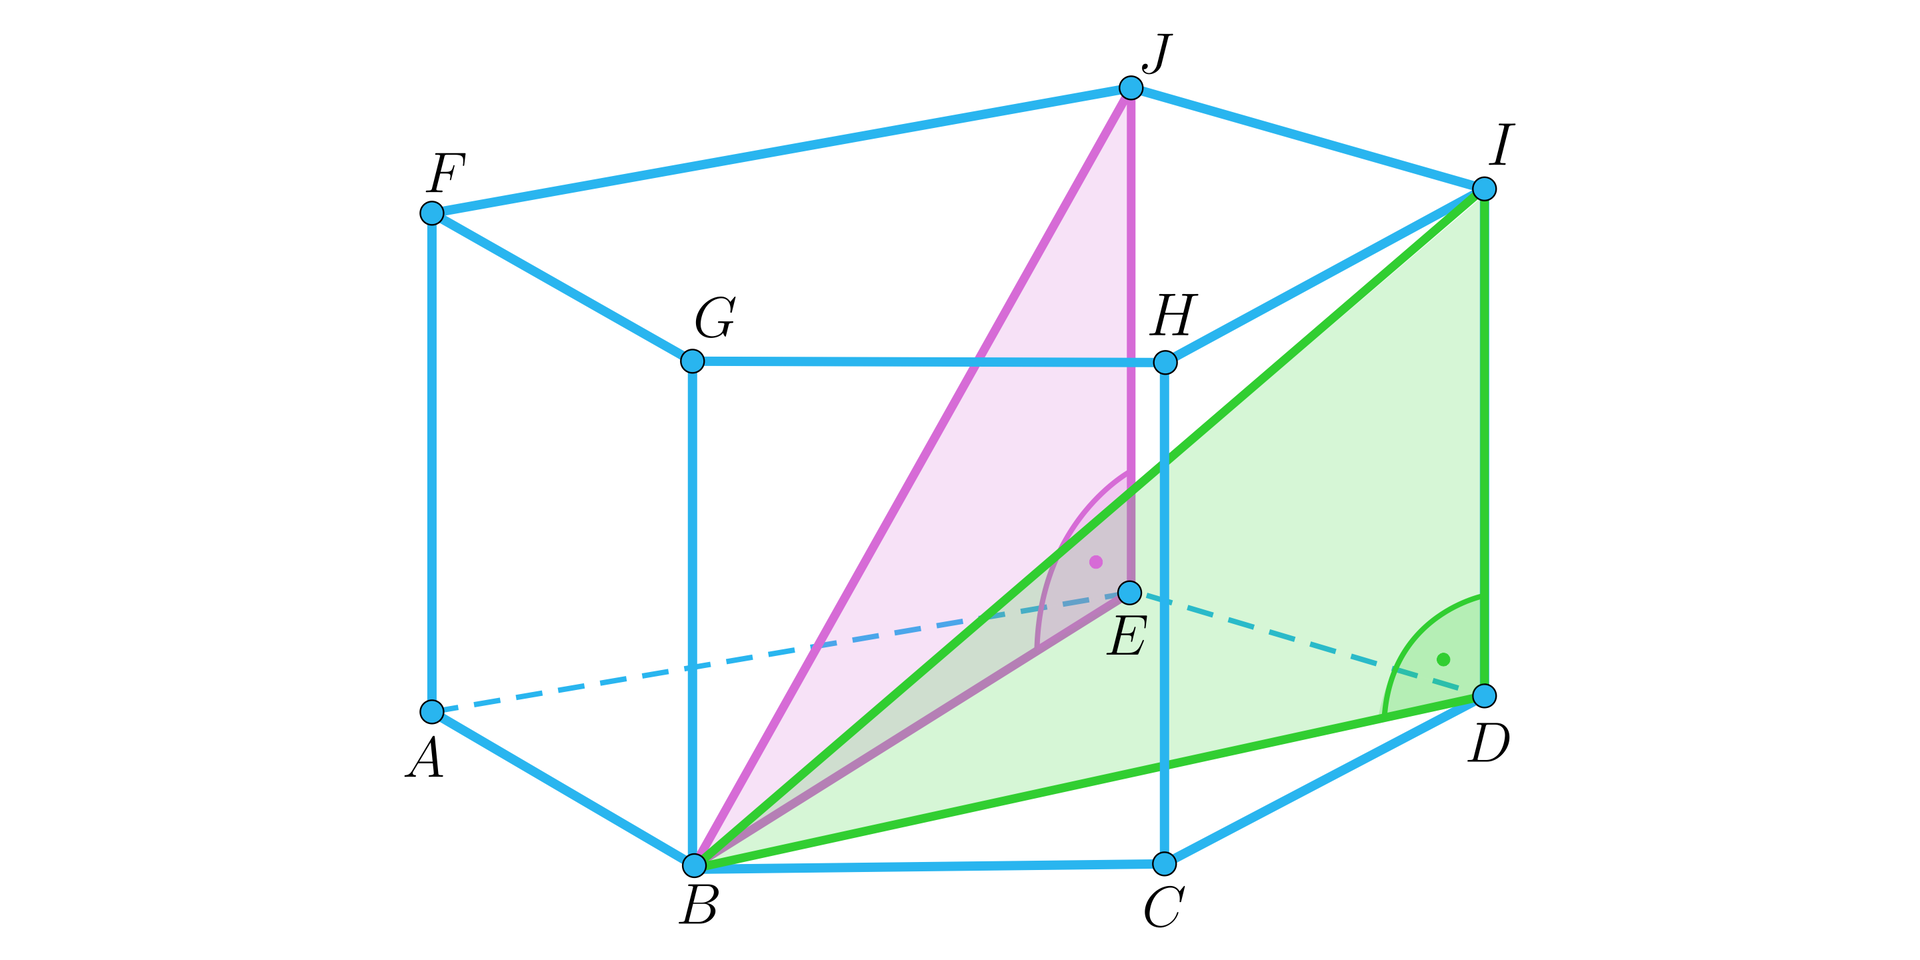 Na ilustracji przedstawiono graniastosłup prosty o podstawie pięciokąta. Dolną podstawę oznaczono wielkimi literami alfabetu od A do E, natomiast górną wielkimi literami od F do J. W przestrzeni graniastosłupa zaznaczono dwa trójkąty prostokątne wyznaczone przez przekątne bryły B I oraz B J. Trójkąt B E J zamalowano kolorem fioletowym. Przekątna graniastosłupa stanowi jego przeciwprostokątną, natomiast przekątna podstawy B E oraz jedna z krawędzi bocznych E J stanowią jego przyprostokątne. Kolejny trójkąt BDI zamalowano kolorem zielonym. Kolejna przekątna graniastosłupa stanowi jego przeciwprostokątną, natomiast druga przekątna podstawy B D oraz krawędź boczna D I stanowią jego przyprostokątne.